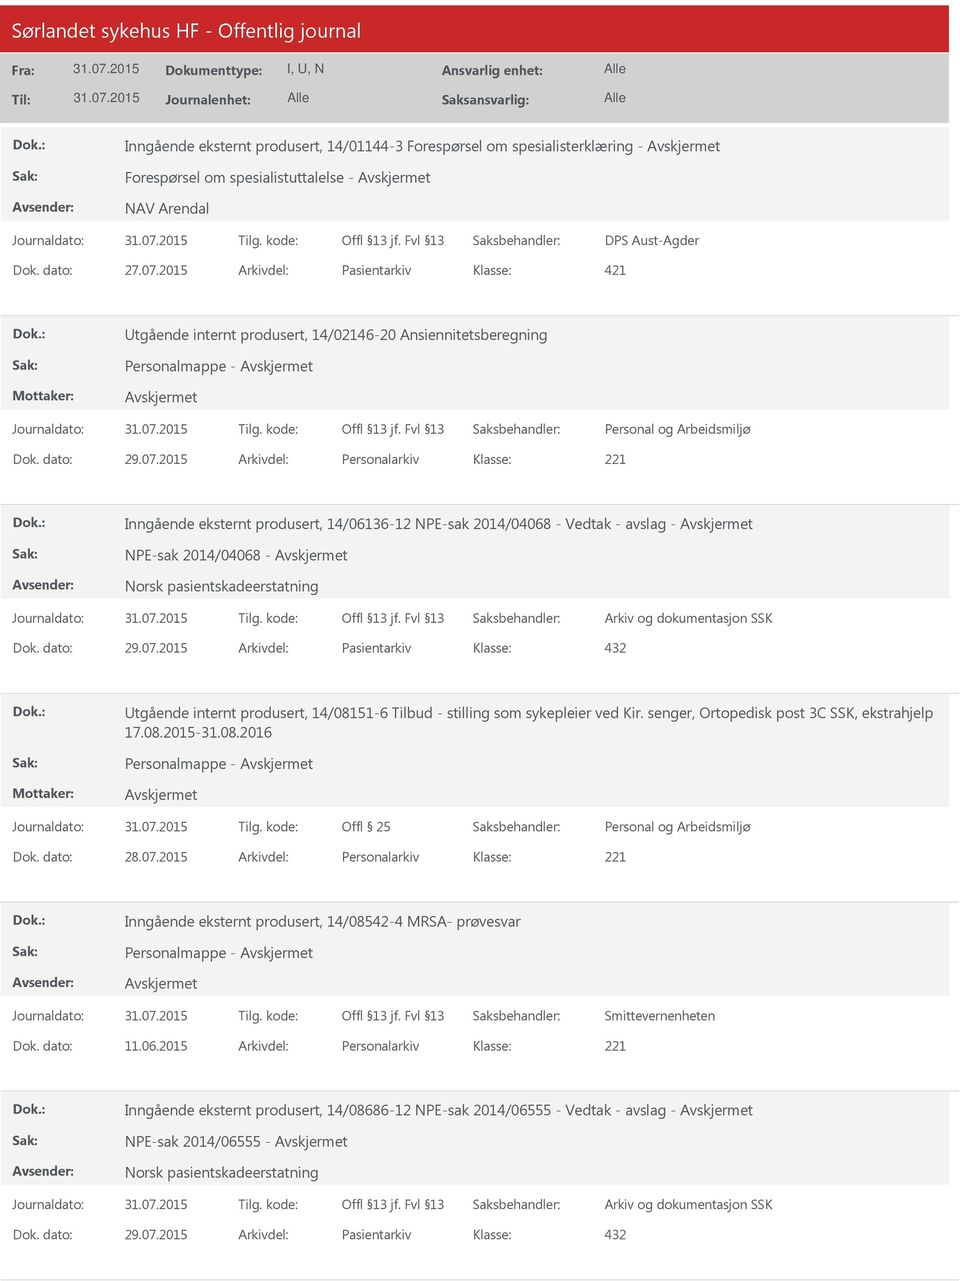 2015 Arkivdel: Personalarkiv Inngående eksternt produsert, 14/06136-12 NPE-sak 2014/04068 - Vedtak - avslag - NPE-sak 2014/04068 - Norsk pasientskadeerstatning Dok. dato: 29.07.